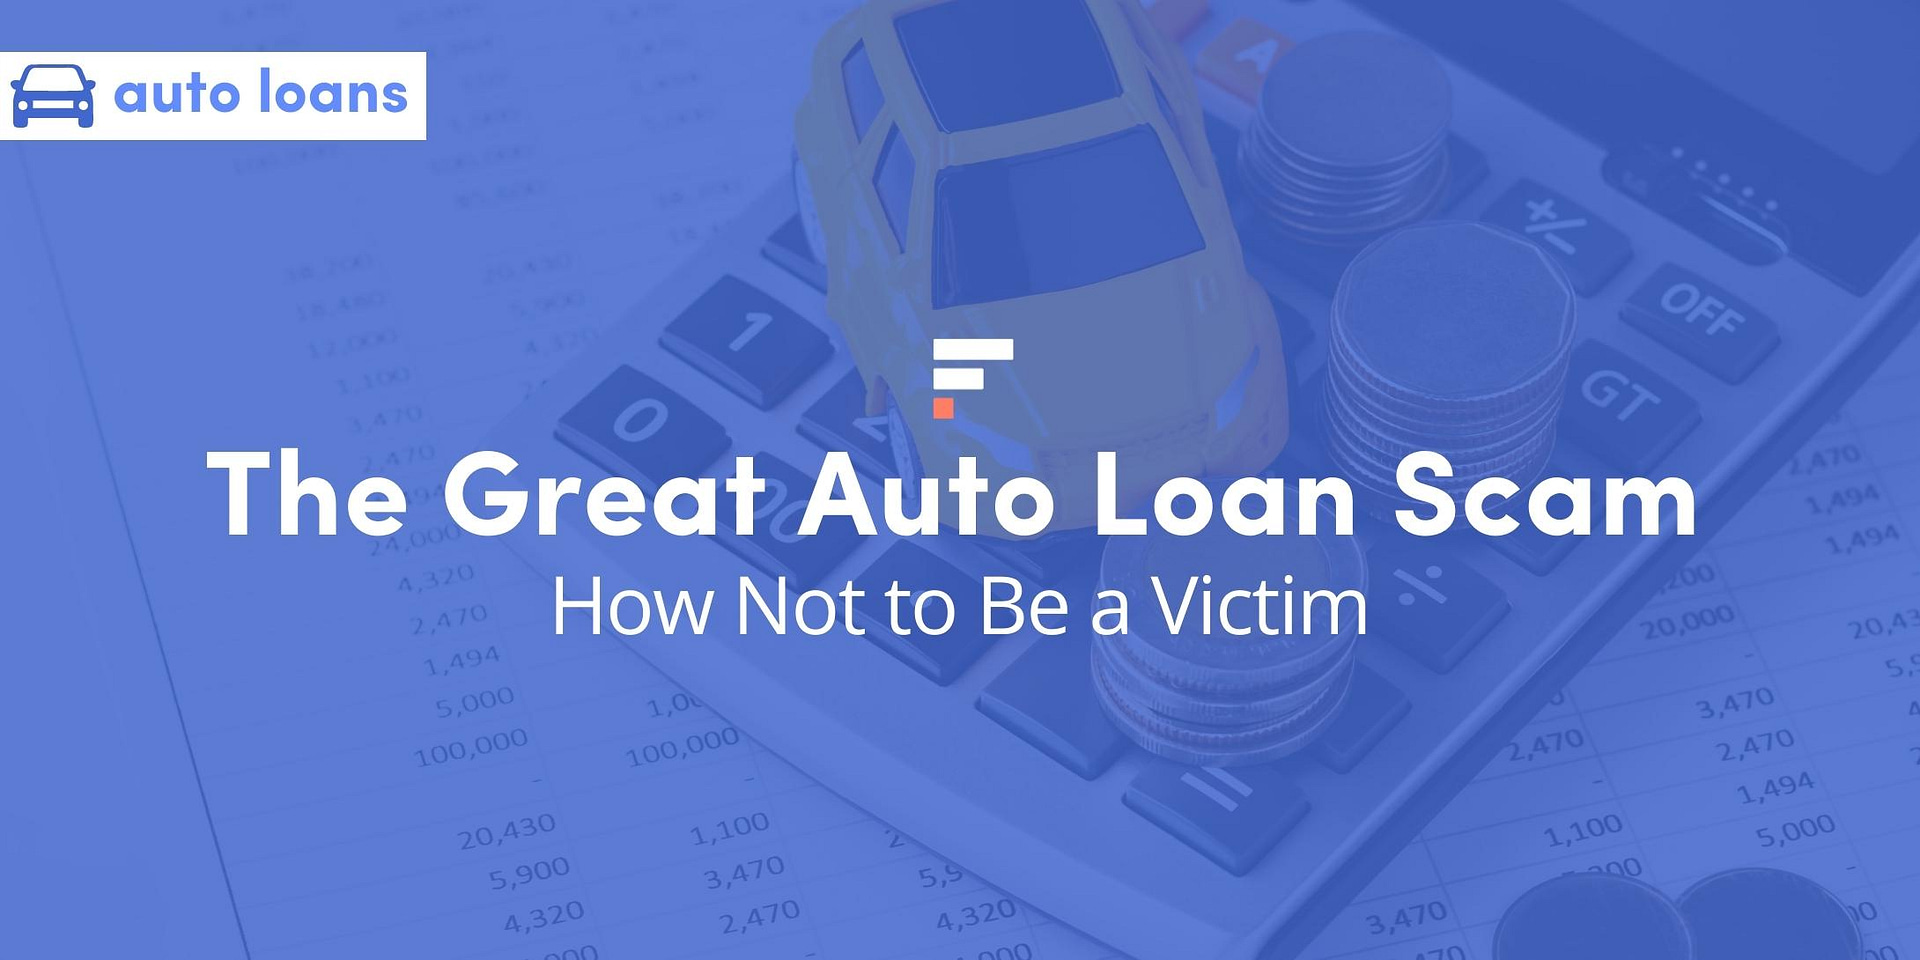 Avoiding auto loan scams